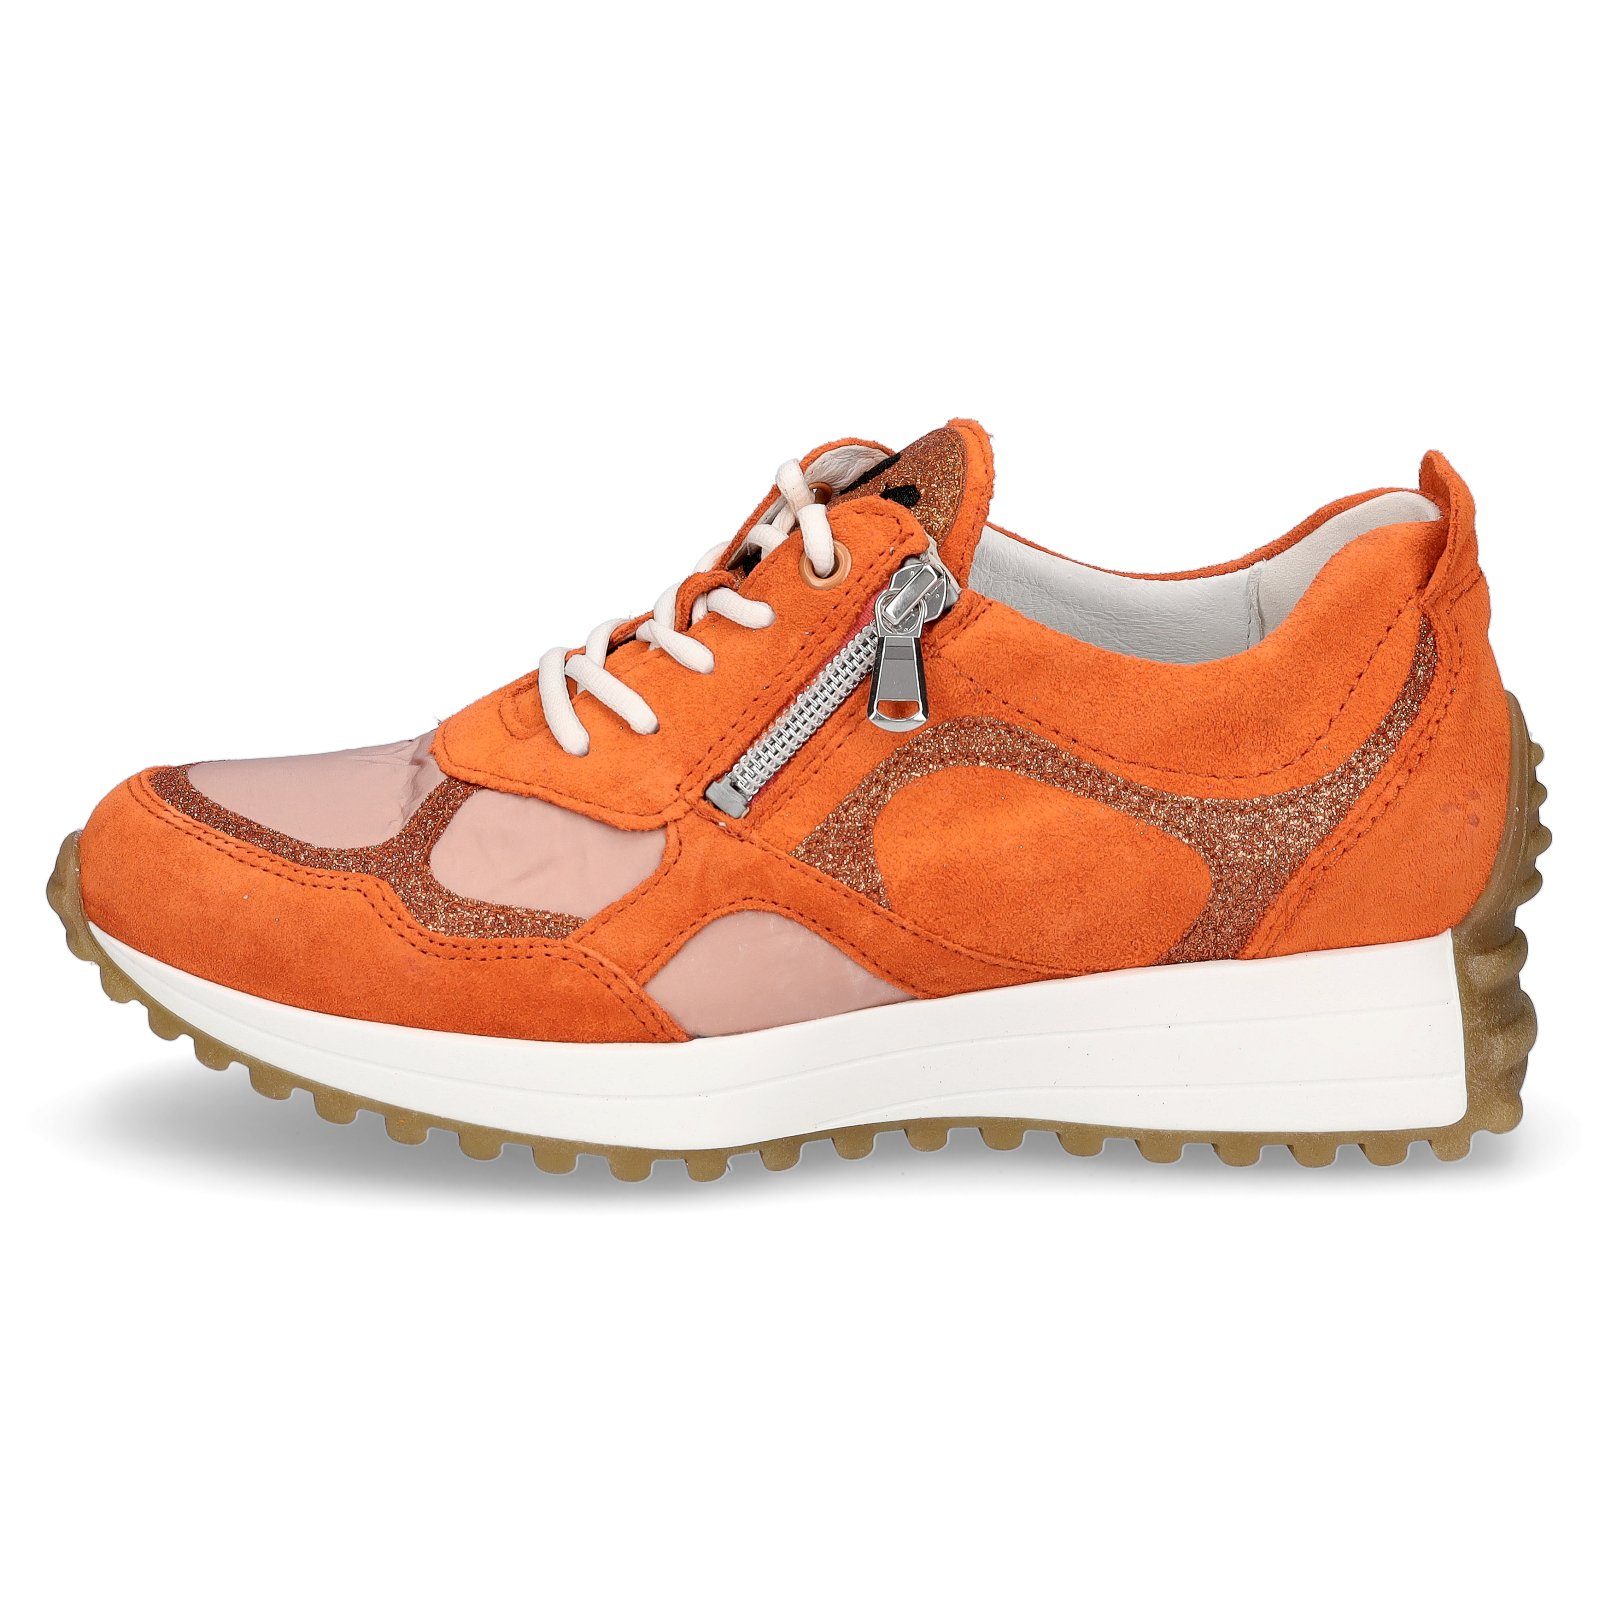 Waldläufer Waldläufer Damen Sneaker apricot Sneaker orange